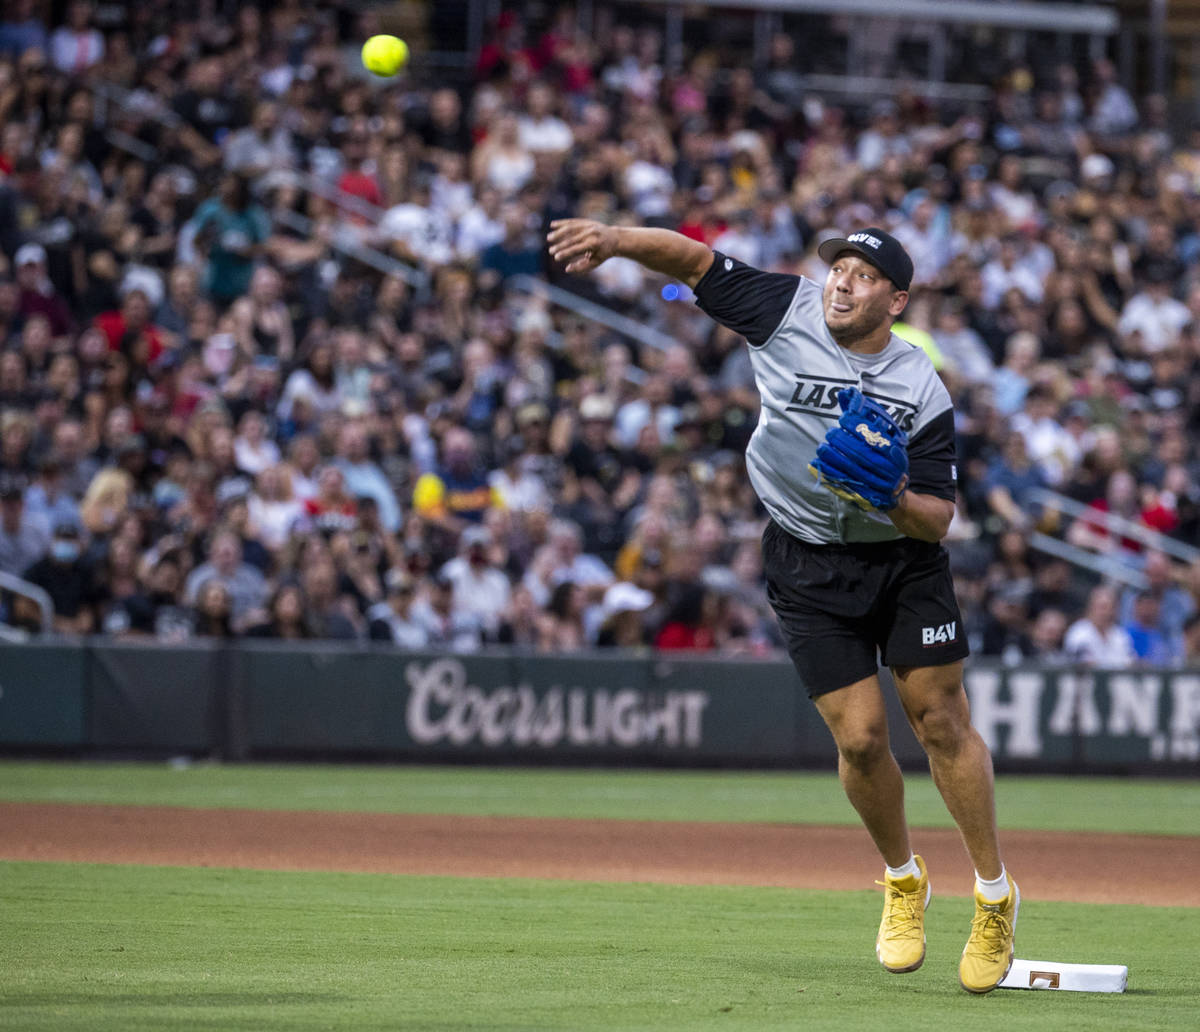 Alec Ingold (45) de Las Vegas Raiders lanza la pelota durante un partido de softball para la ca ...